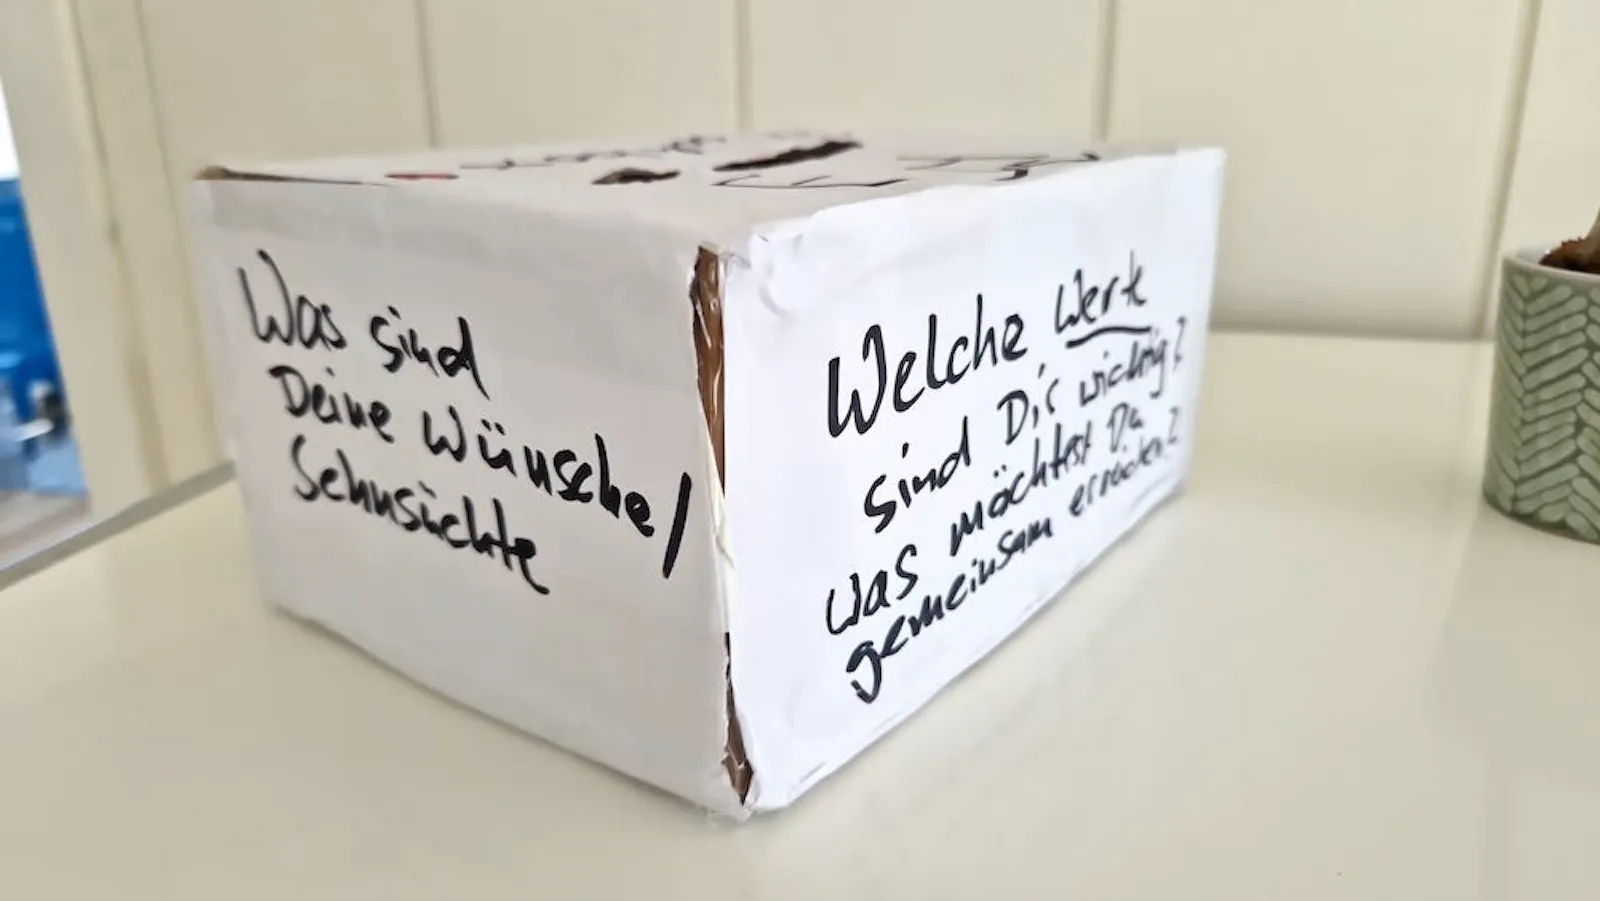 Das Bild zeigt eine Kiste mit Schlitz oben und Sprüchen an der Seite: "Was sind deine Wünsche oder Sehnsüchte?"